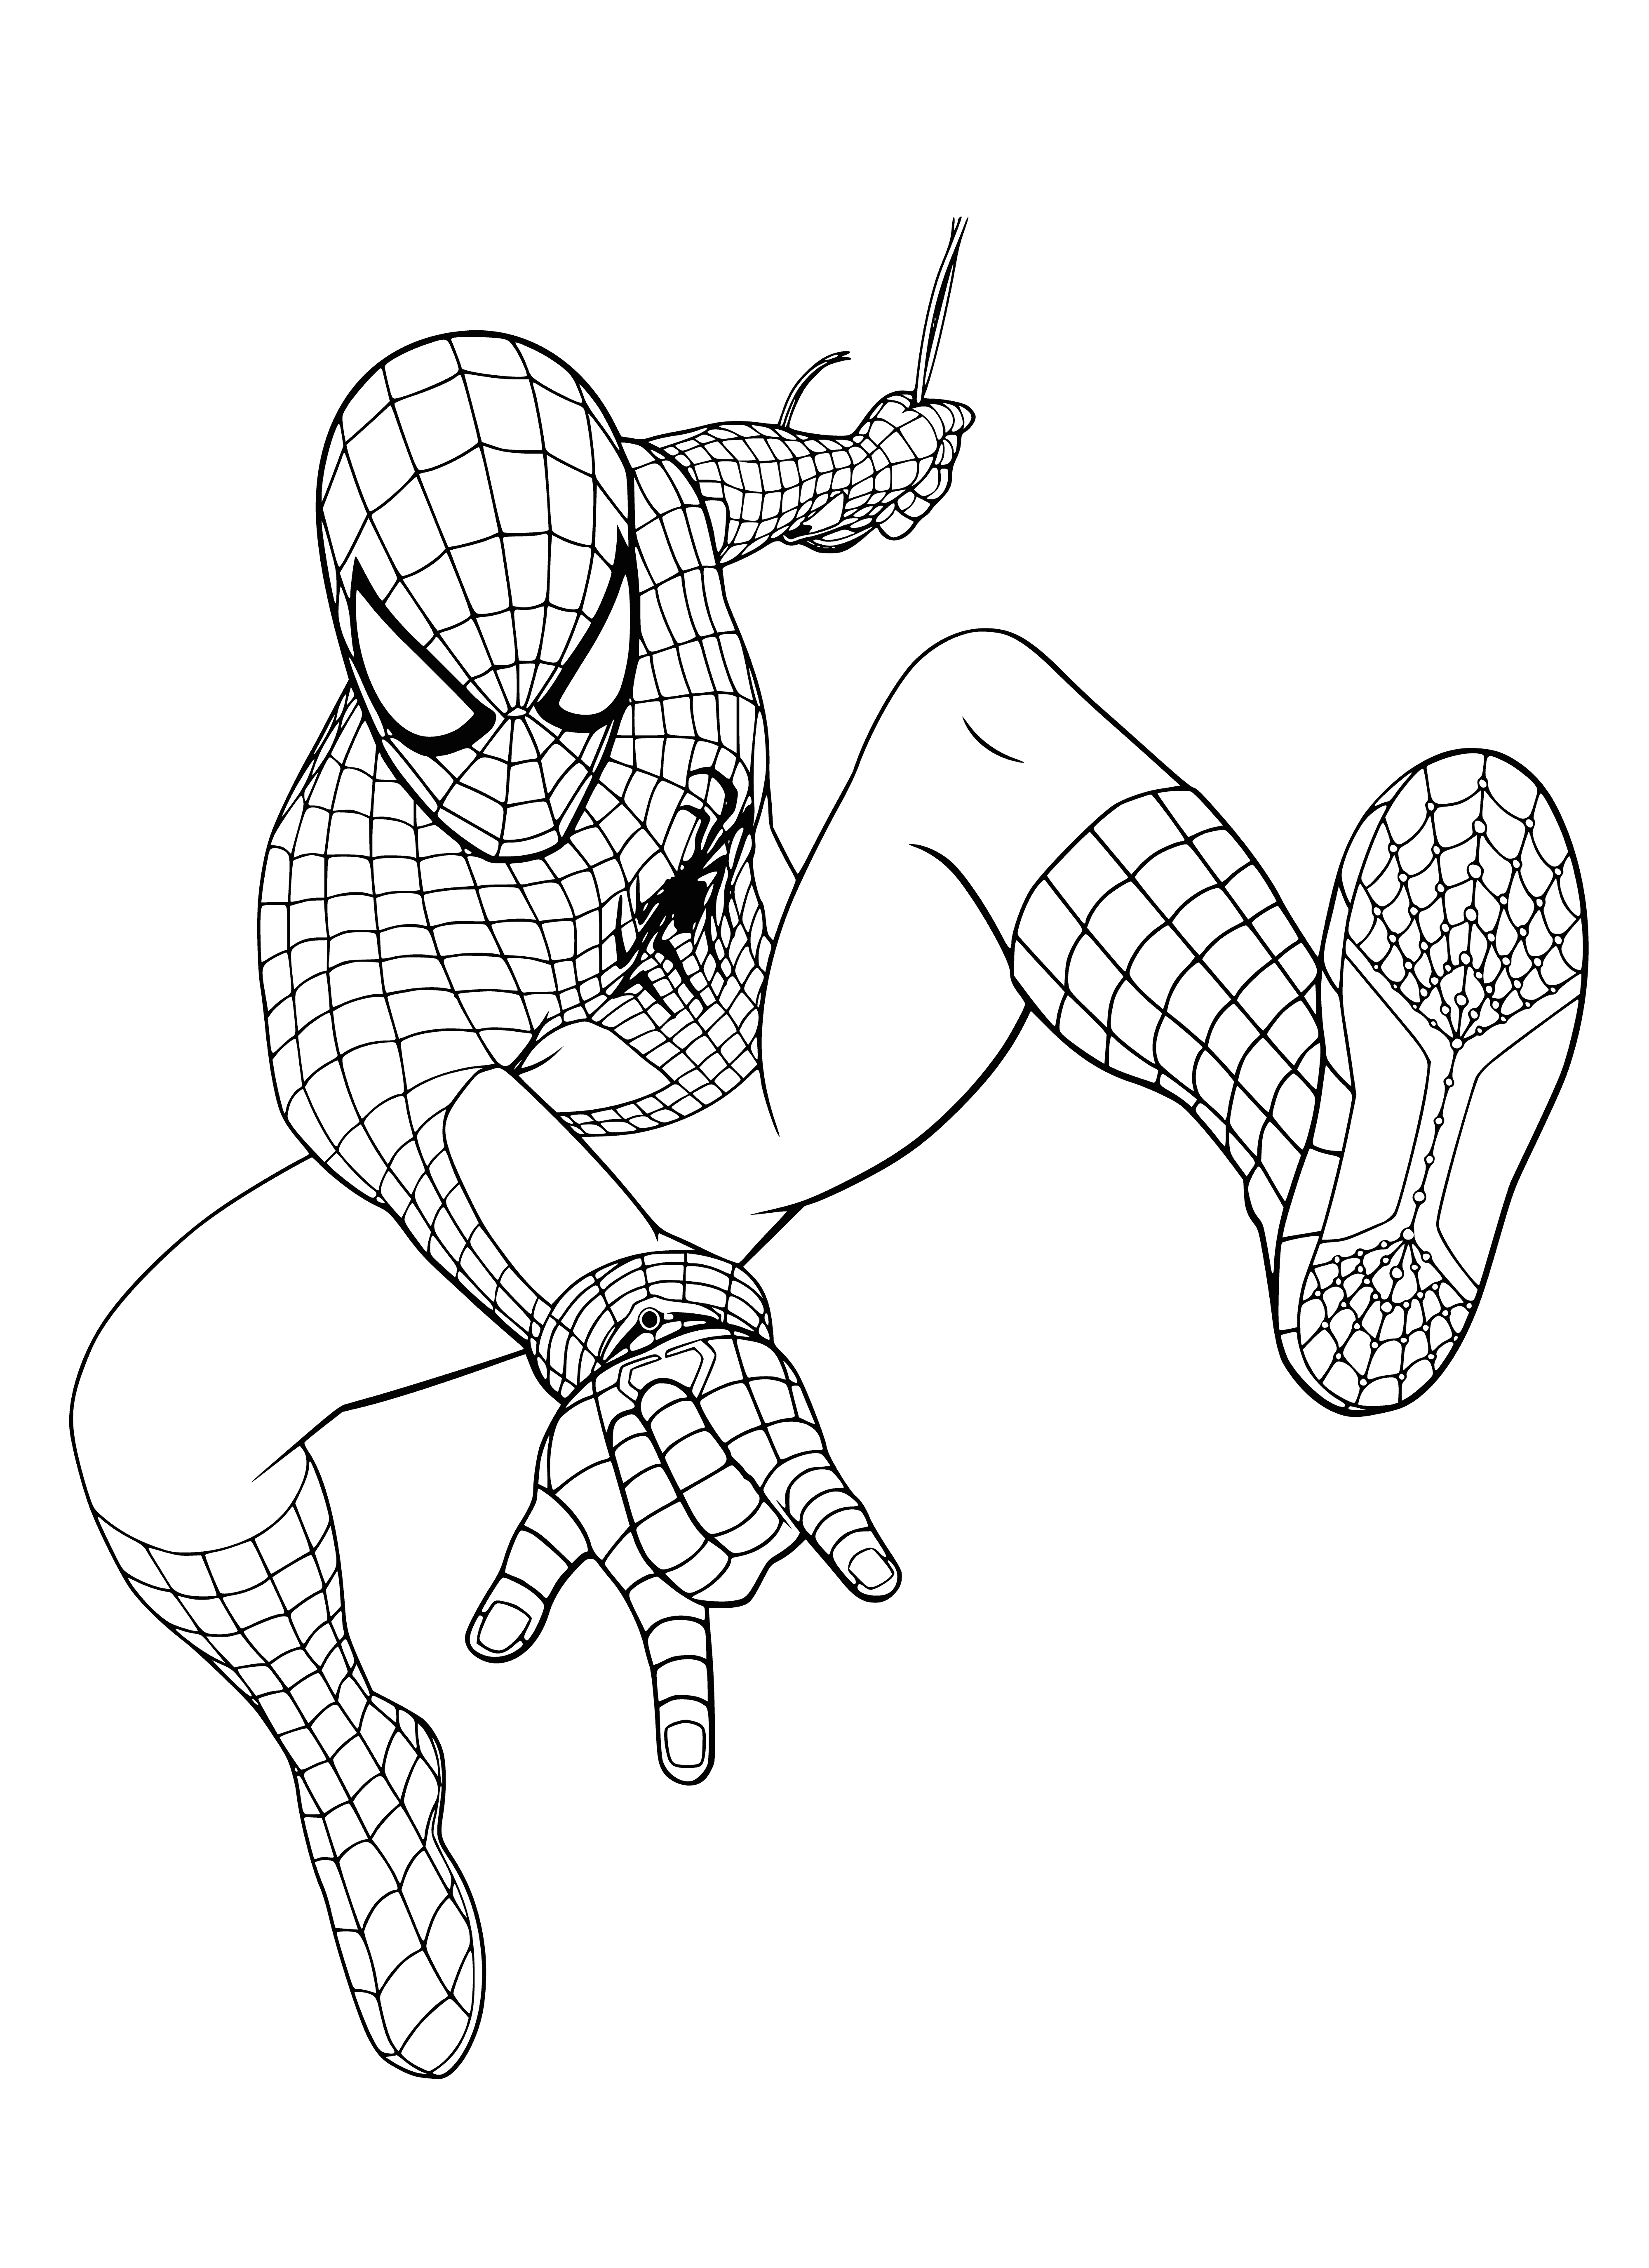 Superhero Spiderman coloring page